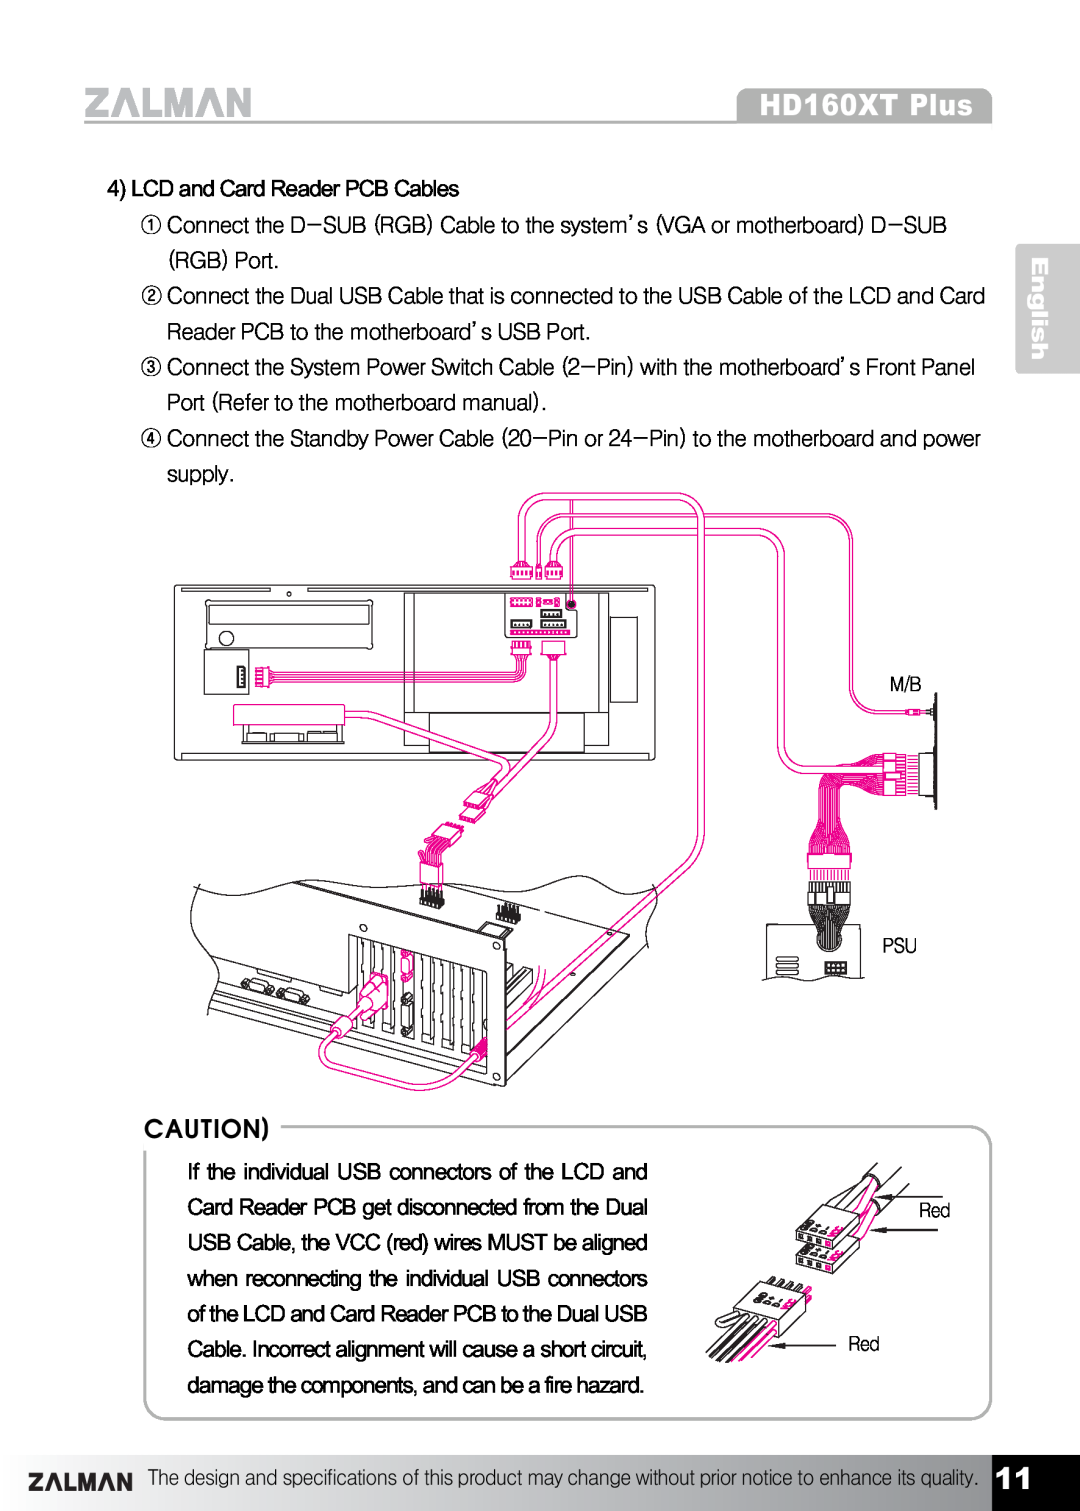 ZALMAN HD160XT Plus manual English, LCD and Card Reader PCB Cables 